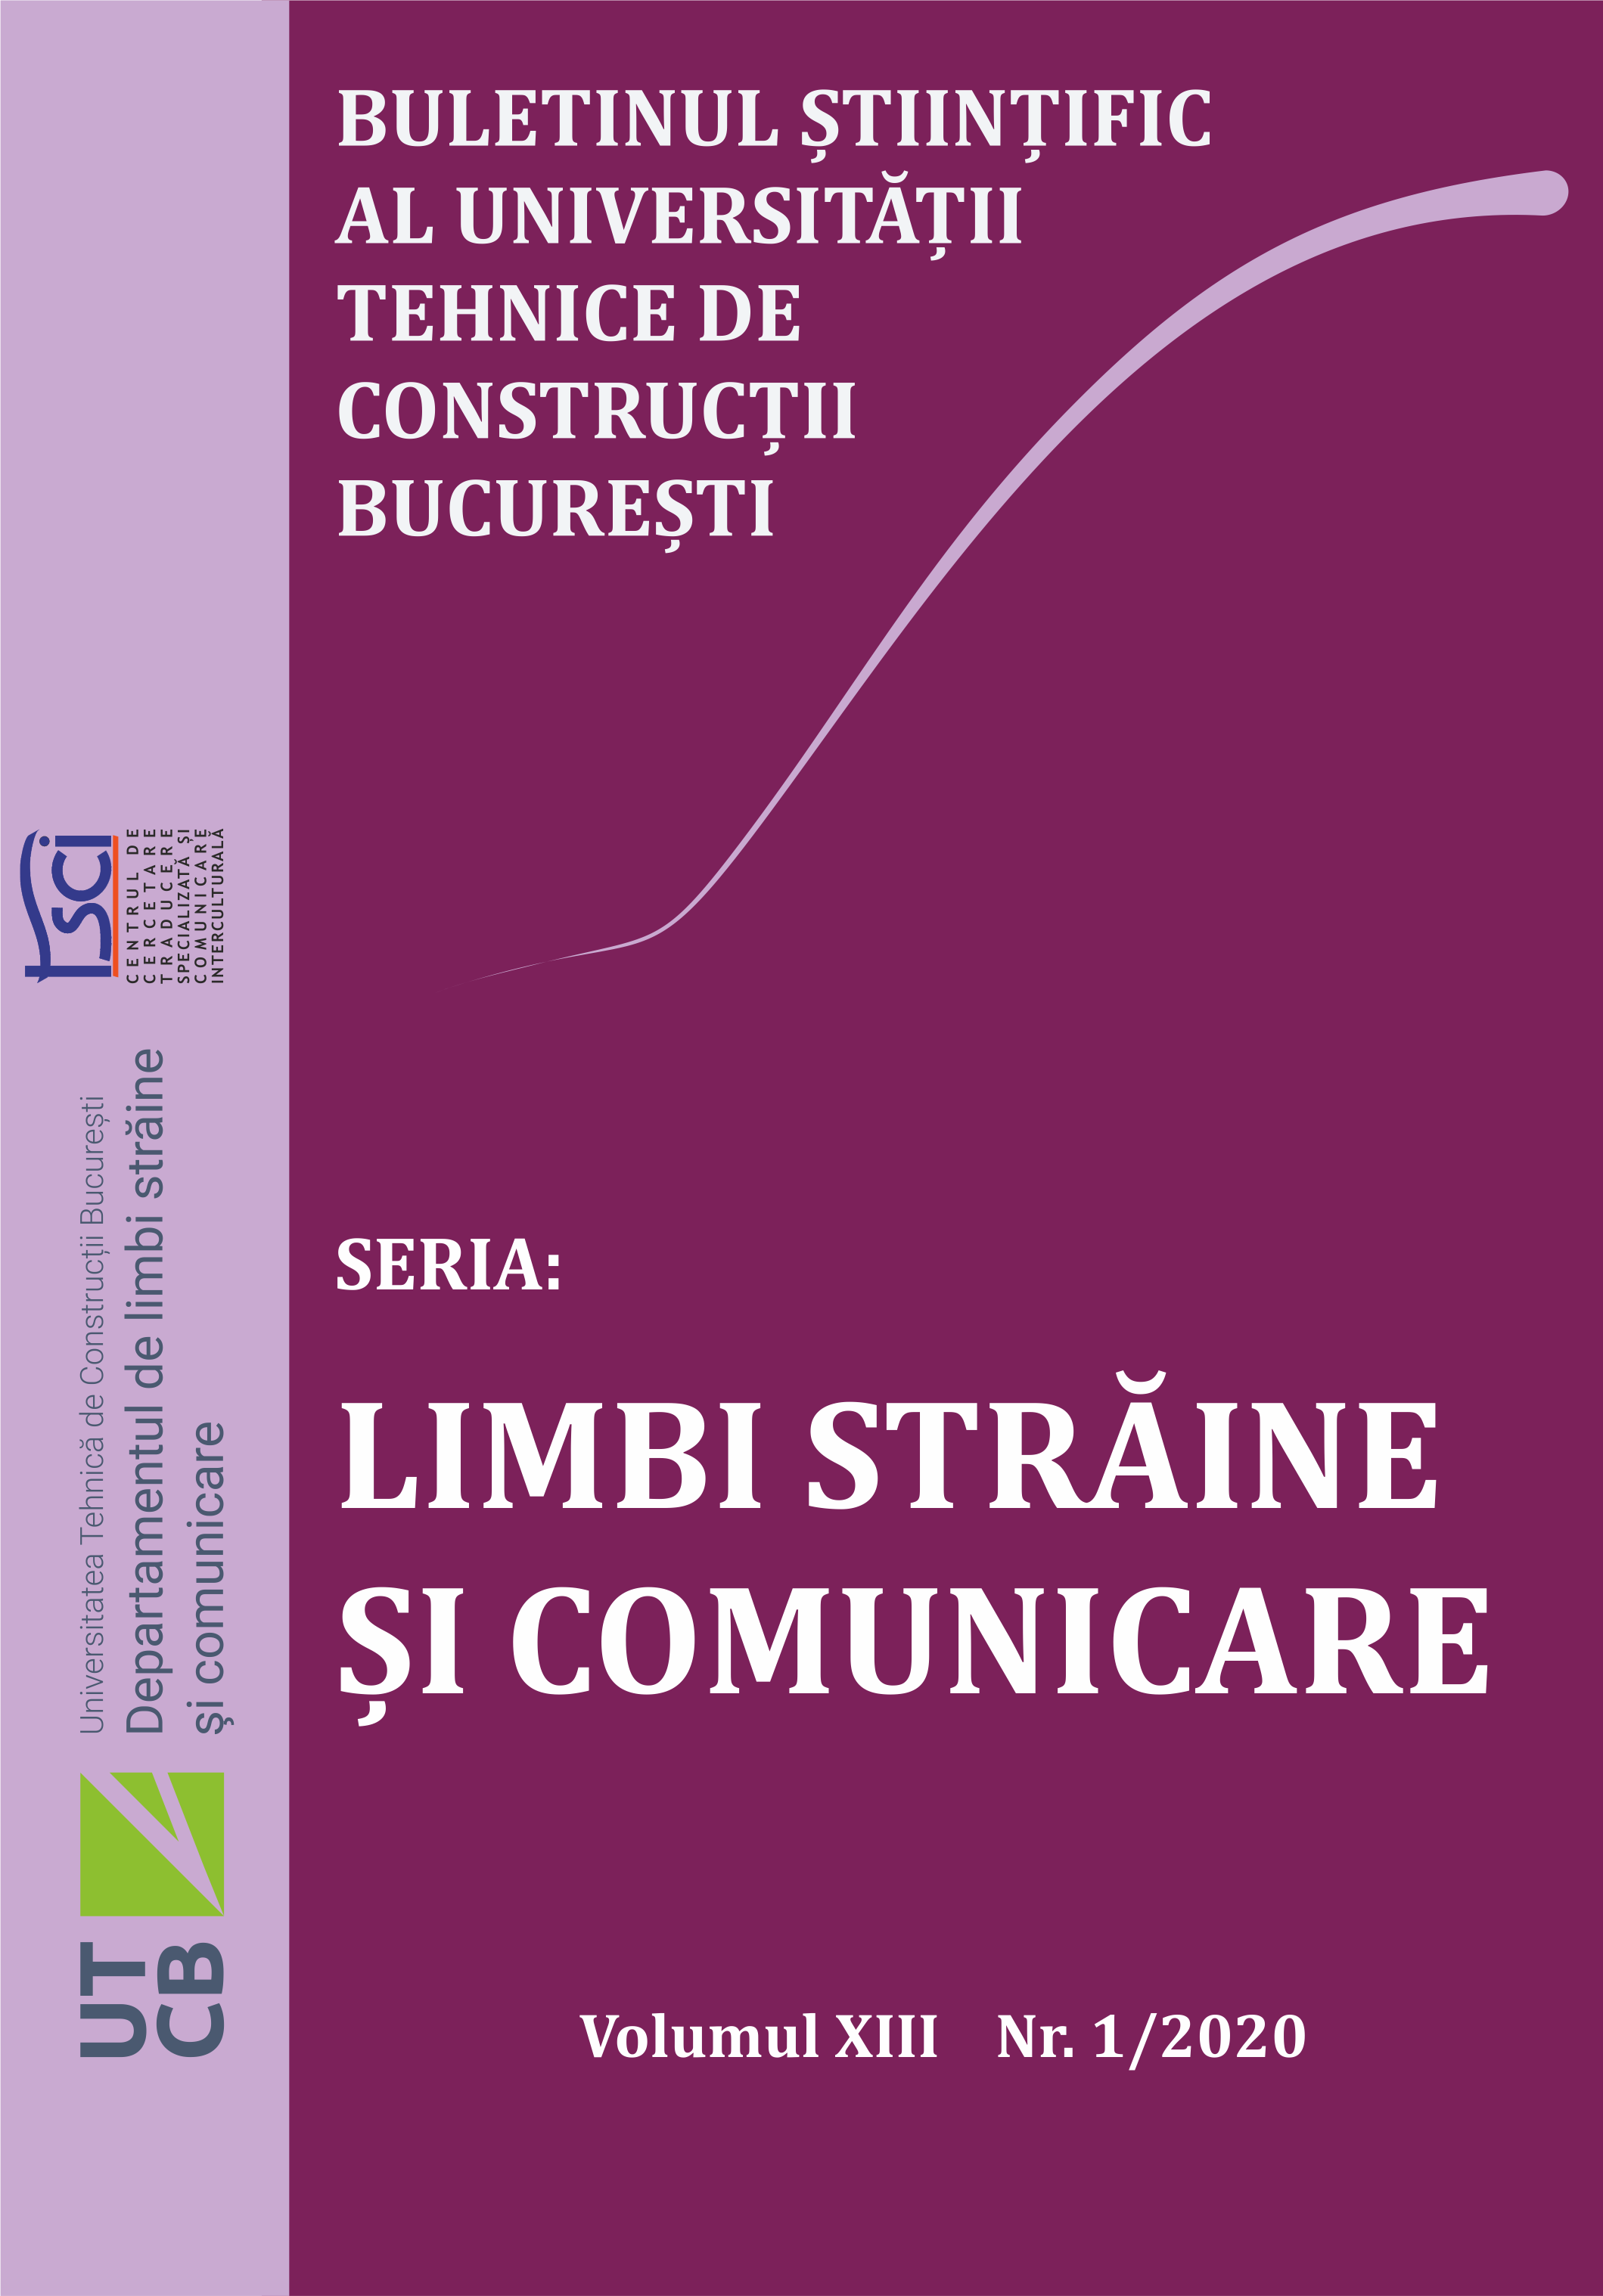 Ghențulescu, R. (2019). Etică academică. București: Conspress. Cover Image